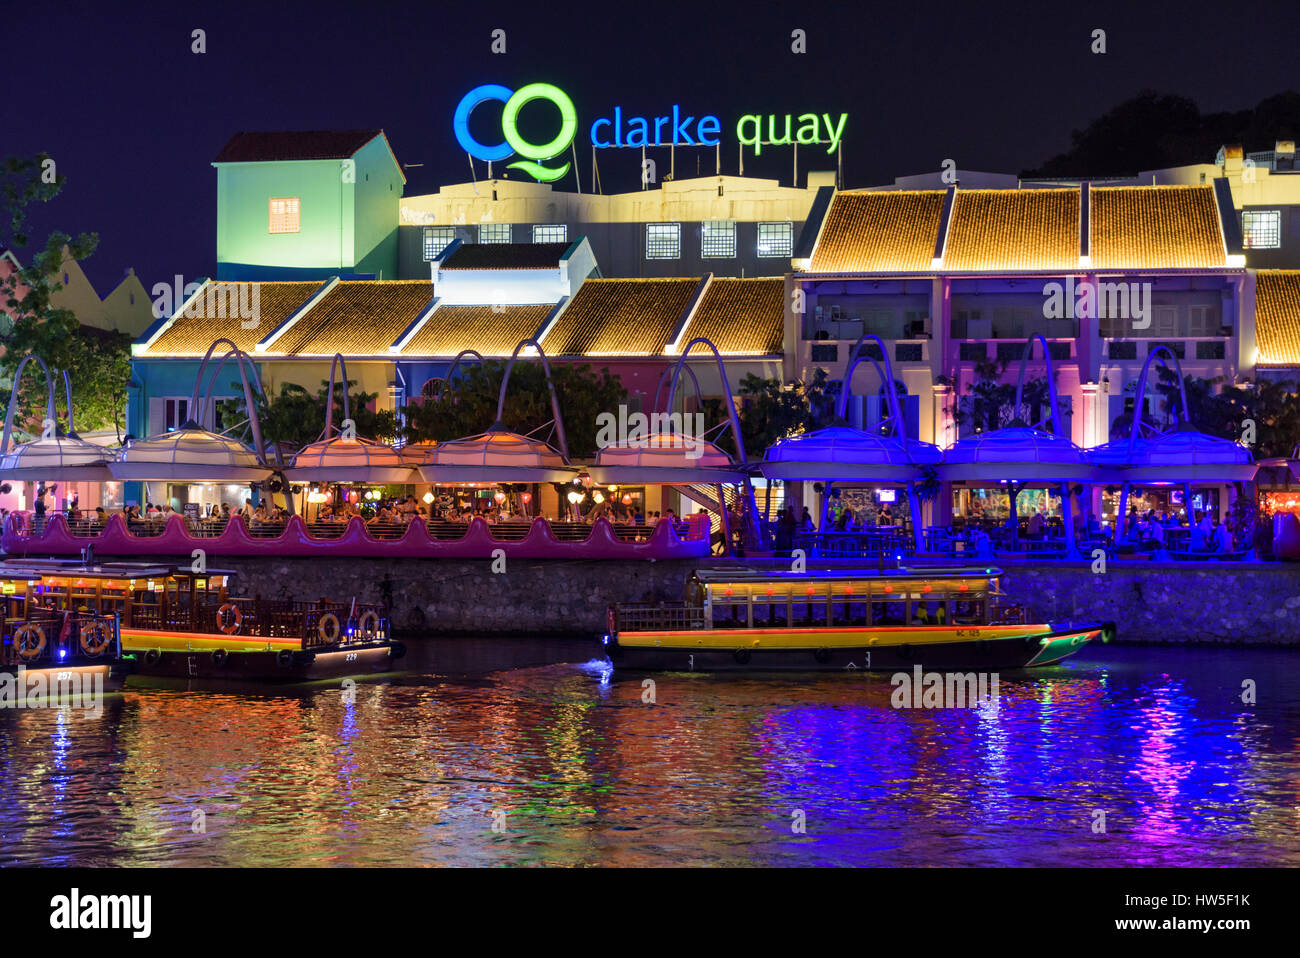 Clarke Quay recinto al aire libre por la noche de concurridos cafés y restaurantes a lo largo de la orilla del río, Clarke Quay, Singapur Foto de stock